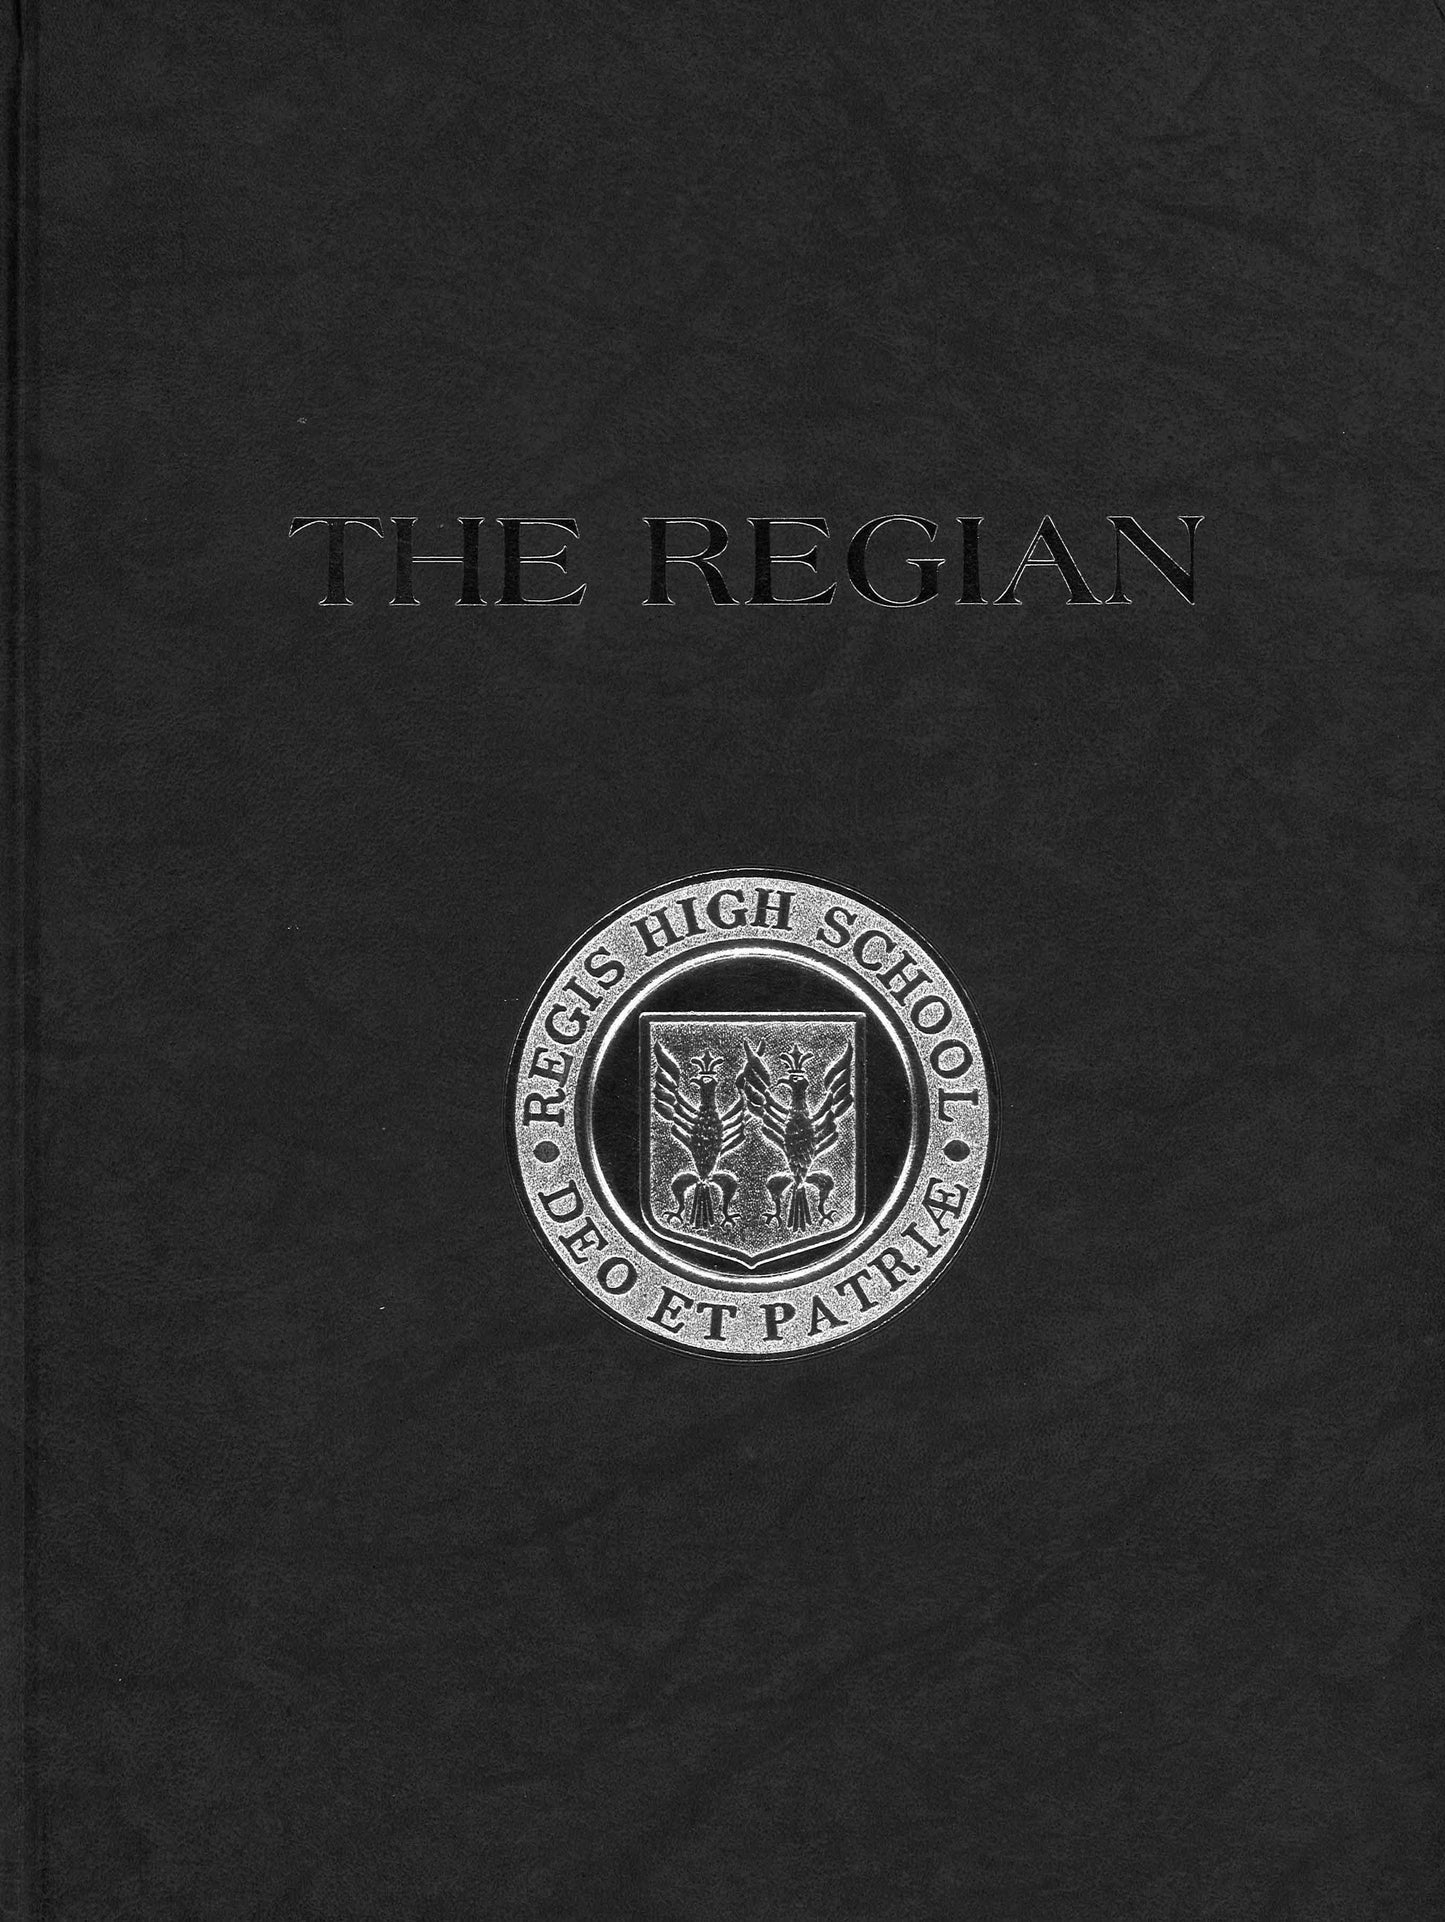 The Regian - 1994